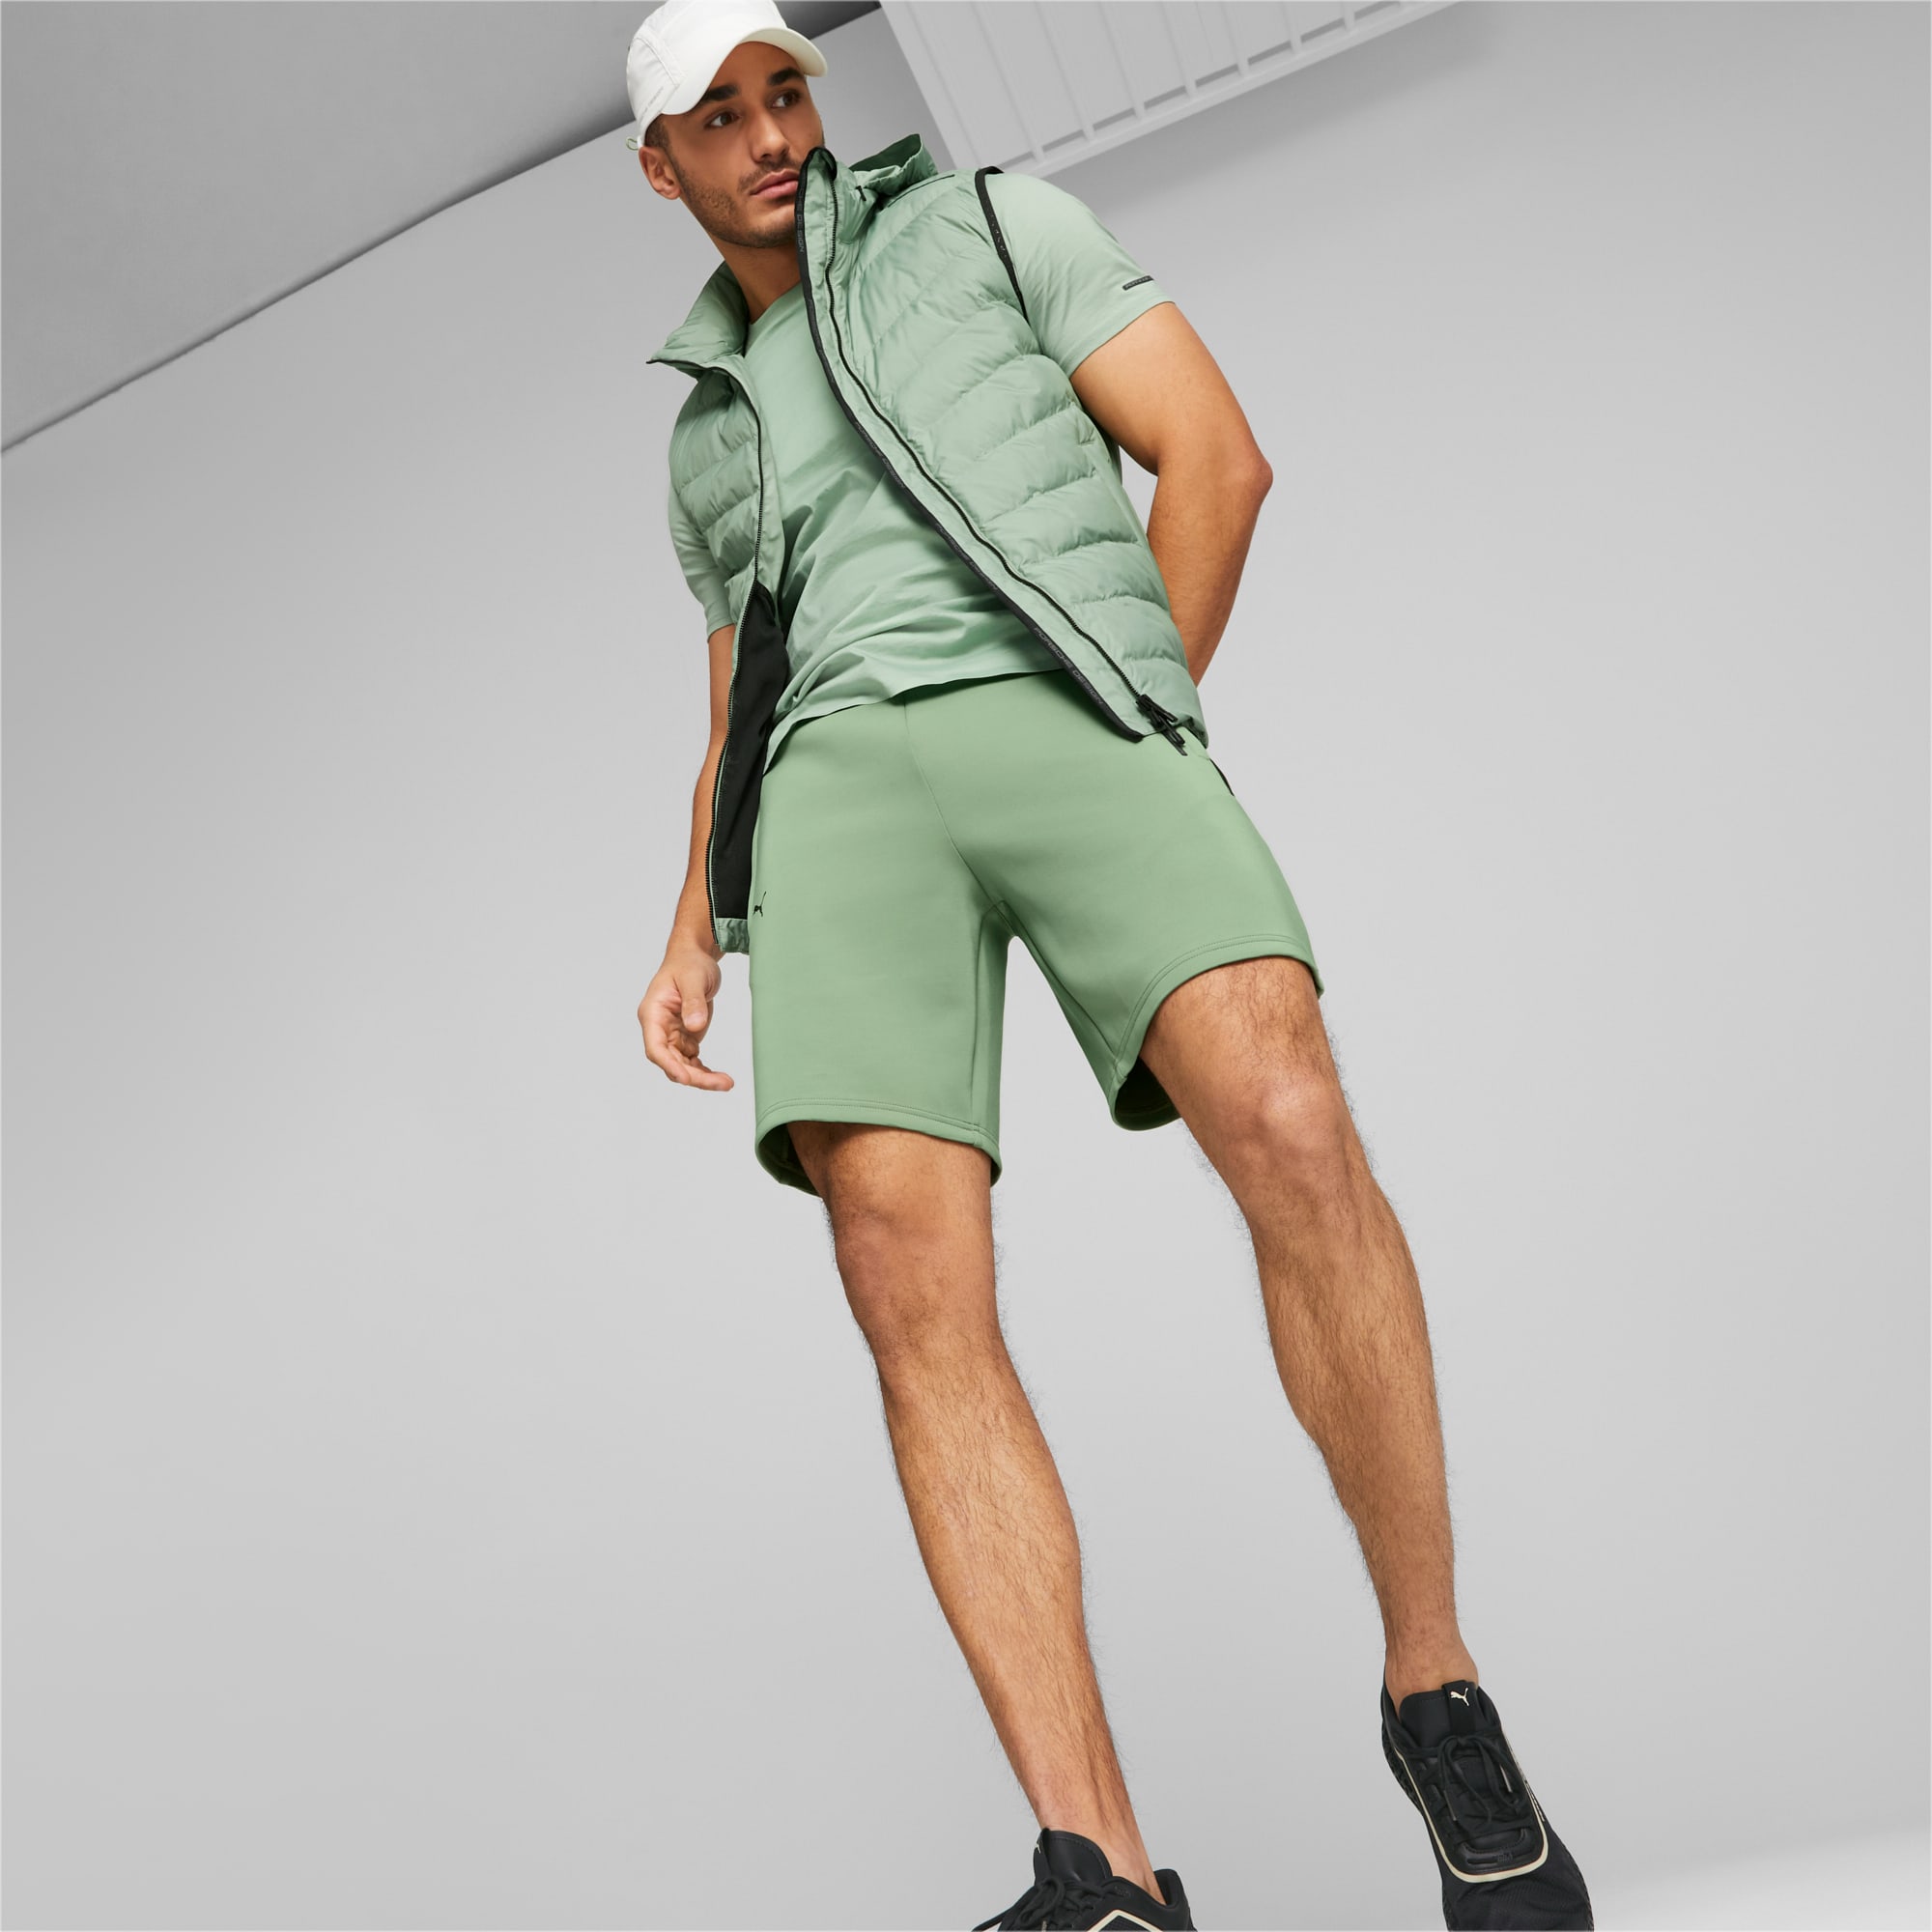 PUMA Porsche Design Light Packable Vest Men Men's Jacket, Dusty Green, Size M, Clothing